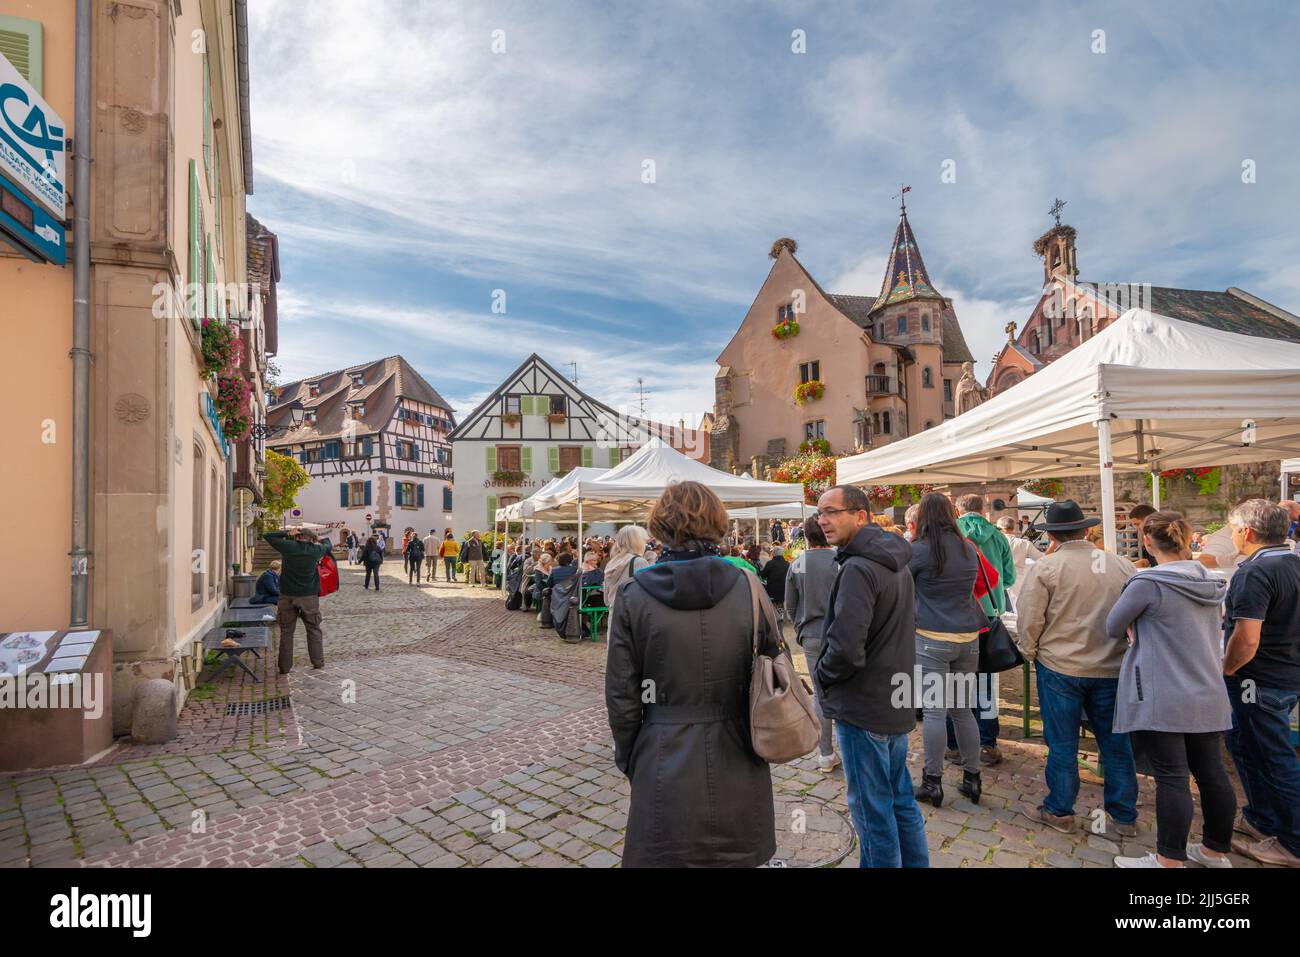 Turisti al centro città mercato posto nella città vecchia francese. Foto Stock